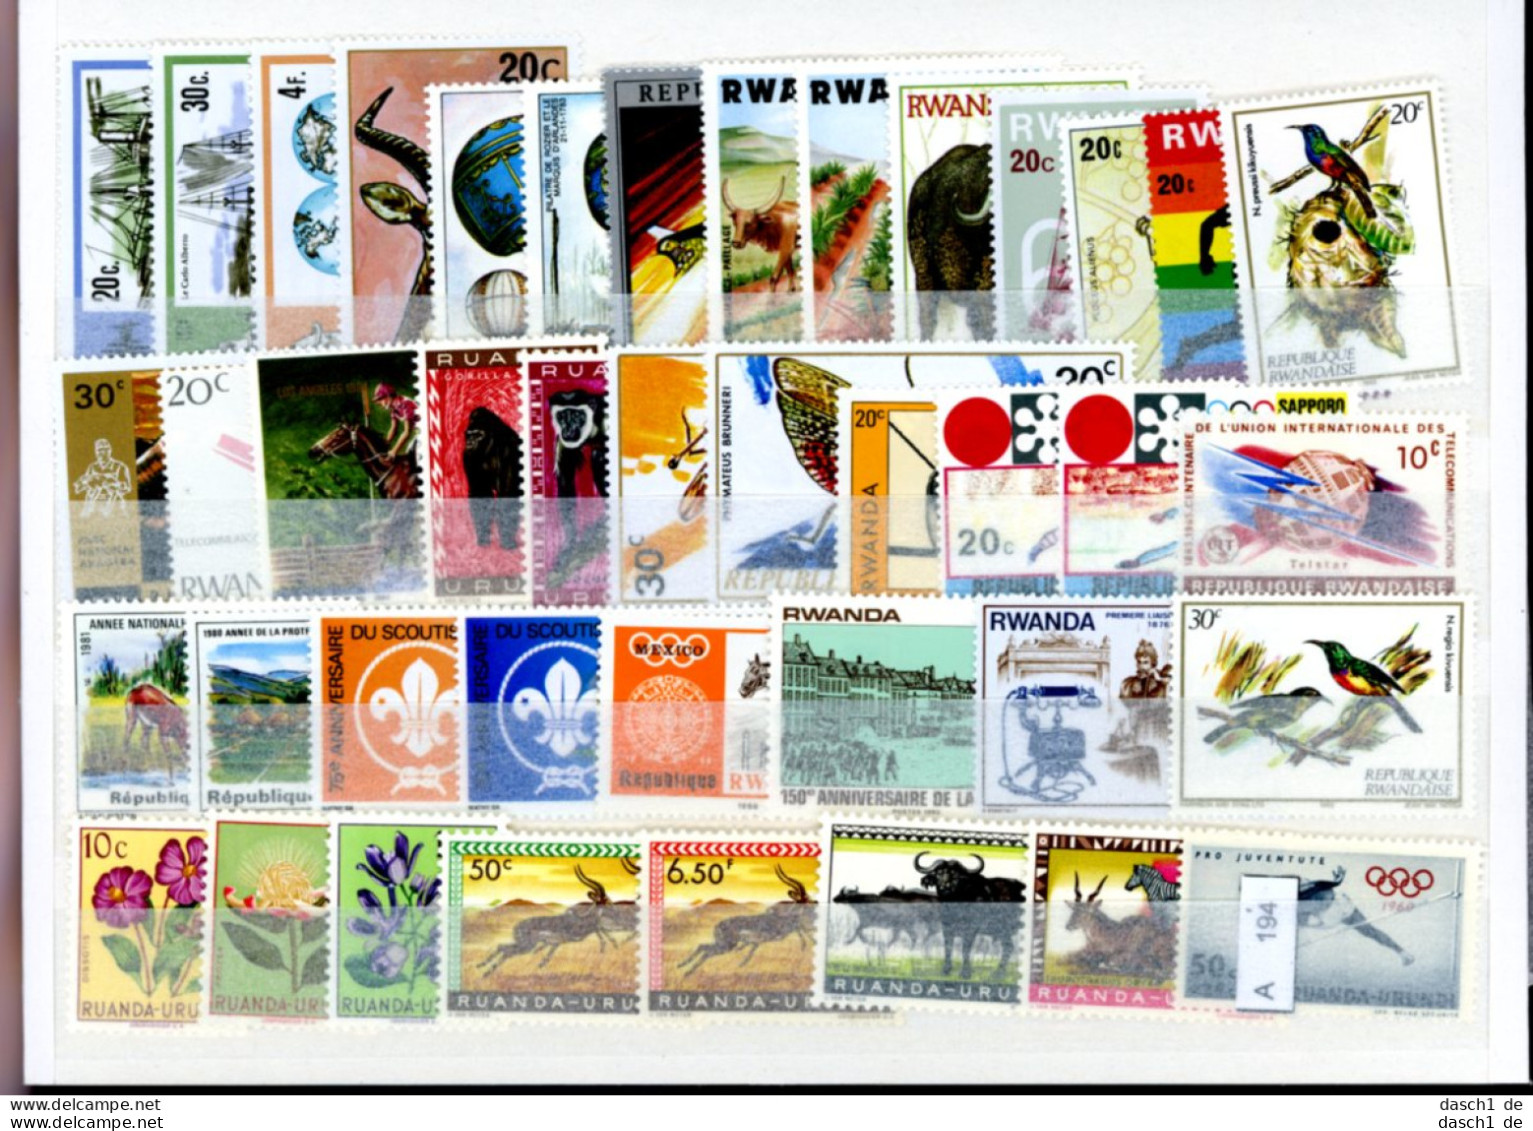 Slg. Postfrische Marken, Xx, 2 Lose Auf A5-Karten Dichtgesteckt, Schwerpunkt Motivmarken, Afrika - Collections (sans Albums)